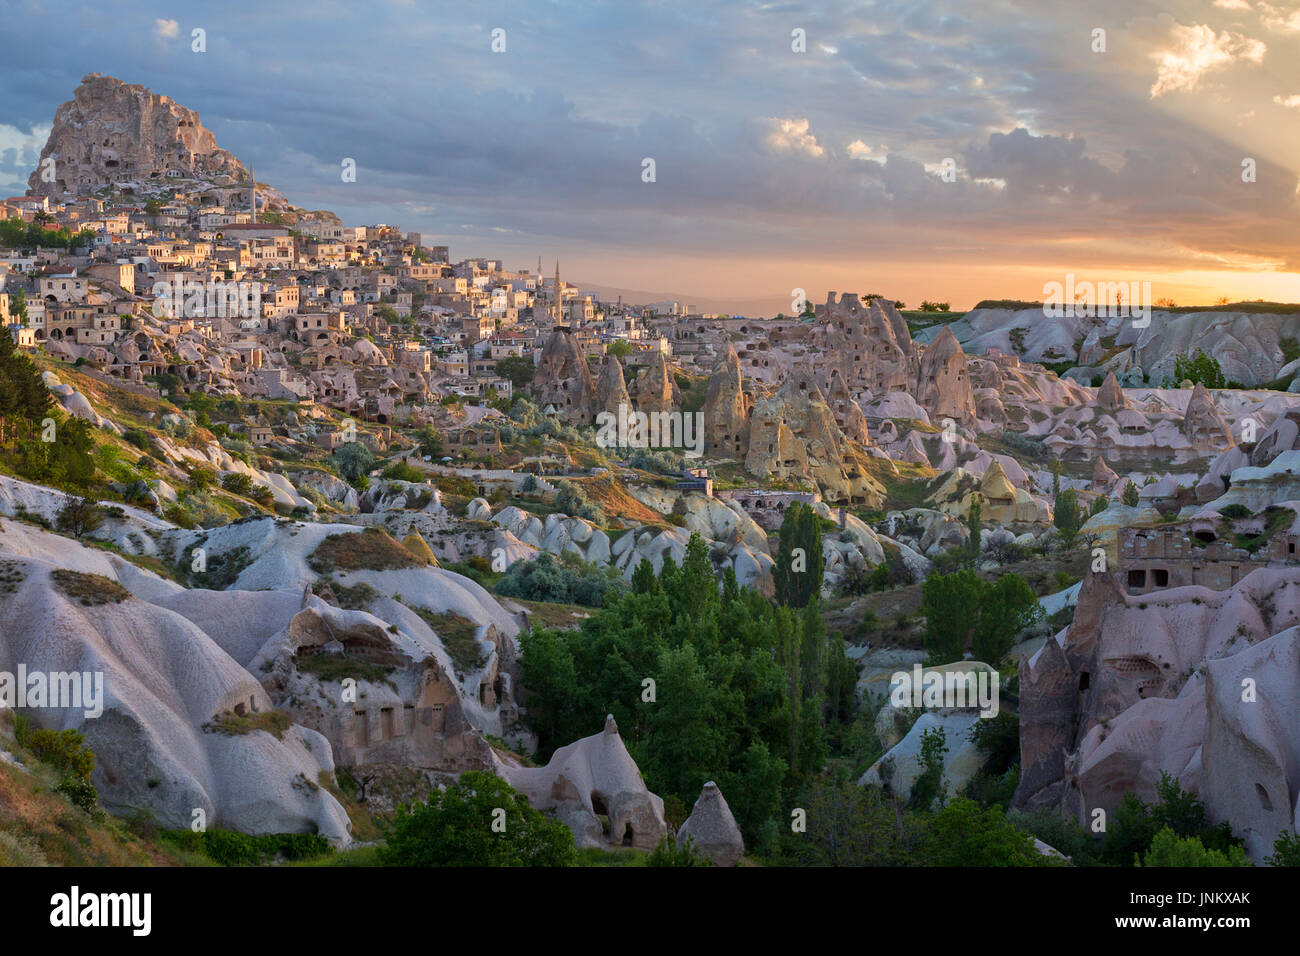 Blick auf die Felsformationen und Höhlenwohnungen von Uchisar, bei Sonnenaufgang, Kappadokien, Türkei. Stockfoto